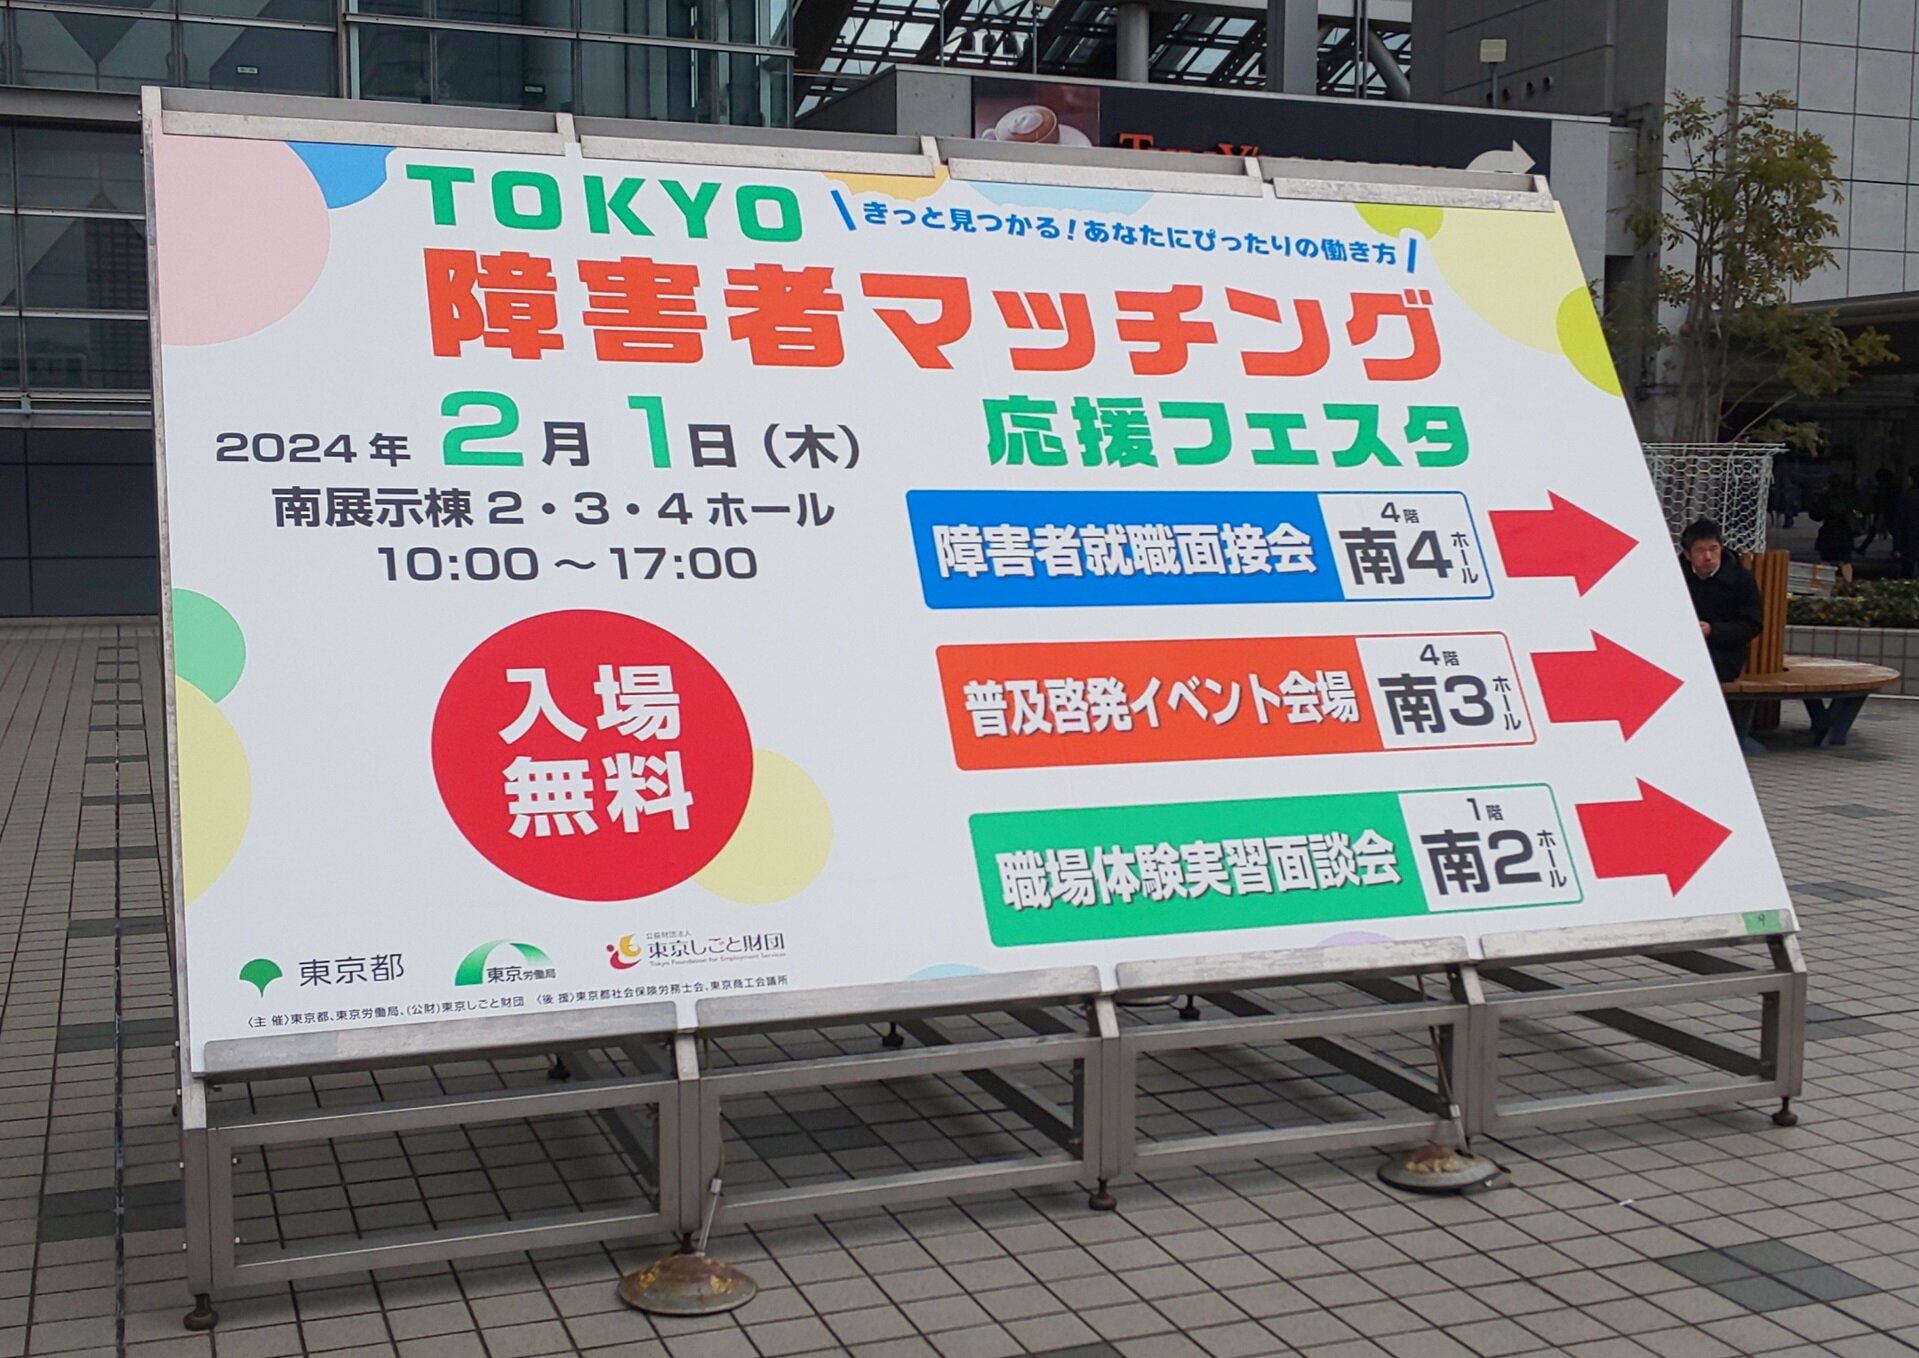 東京障害者マッチング応援フェスタ案内看板の写真